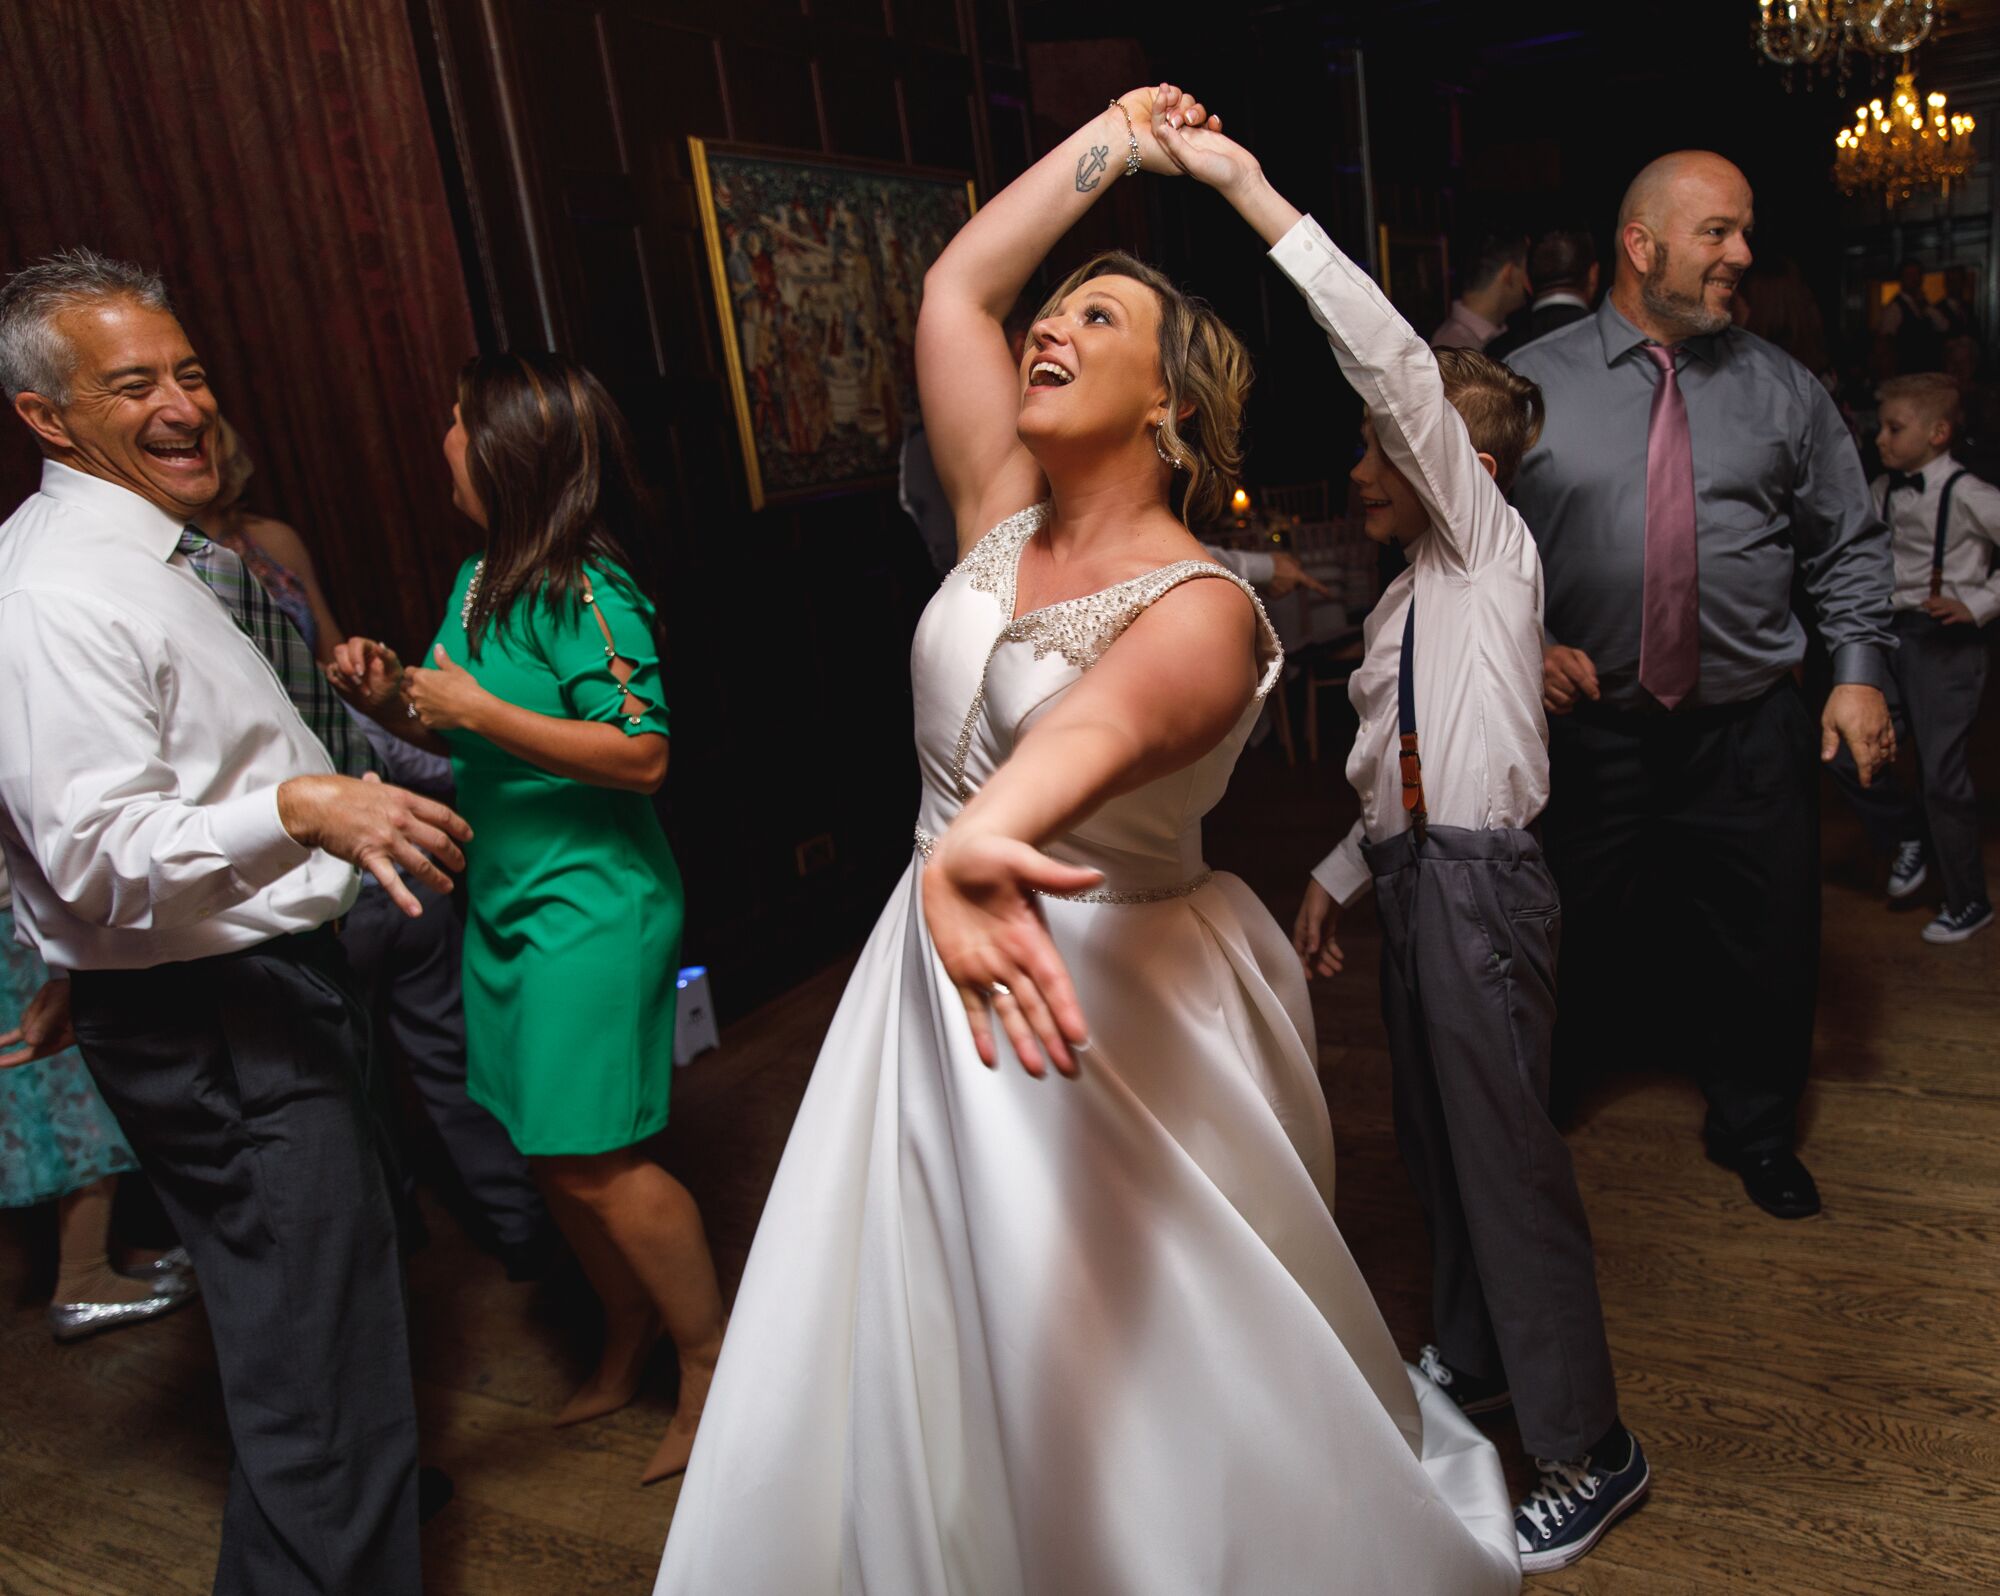 A happy bride dancing at Bartley Lodge Hotel;